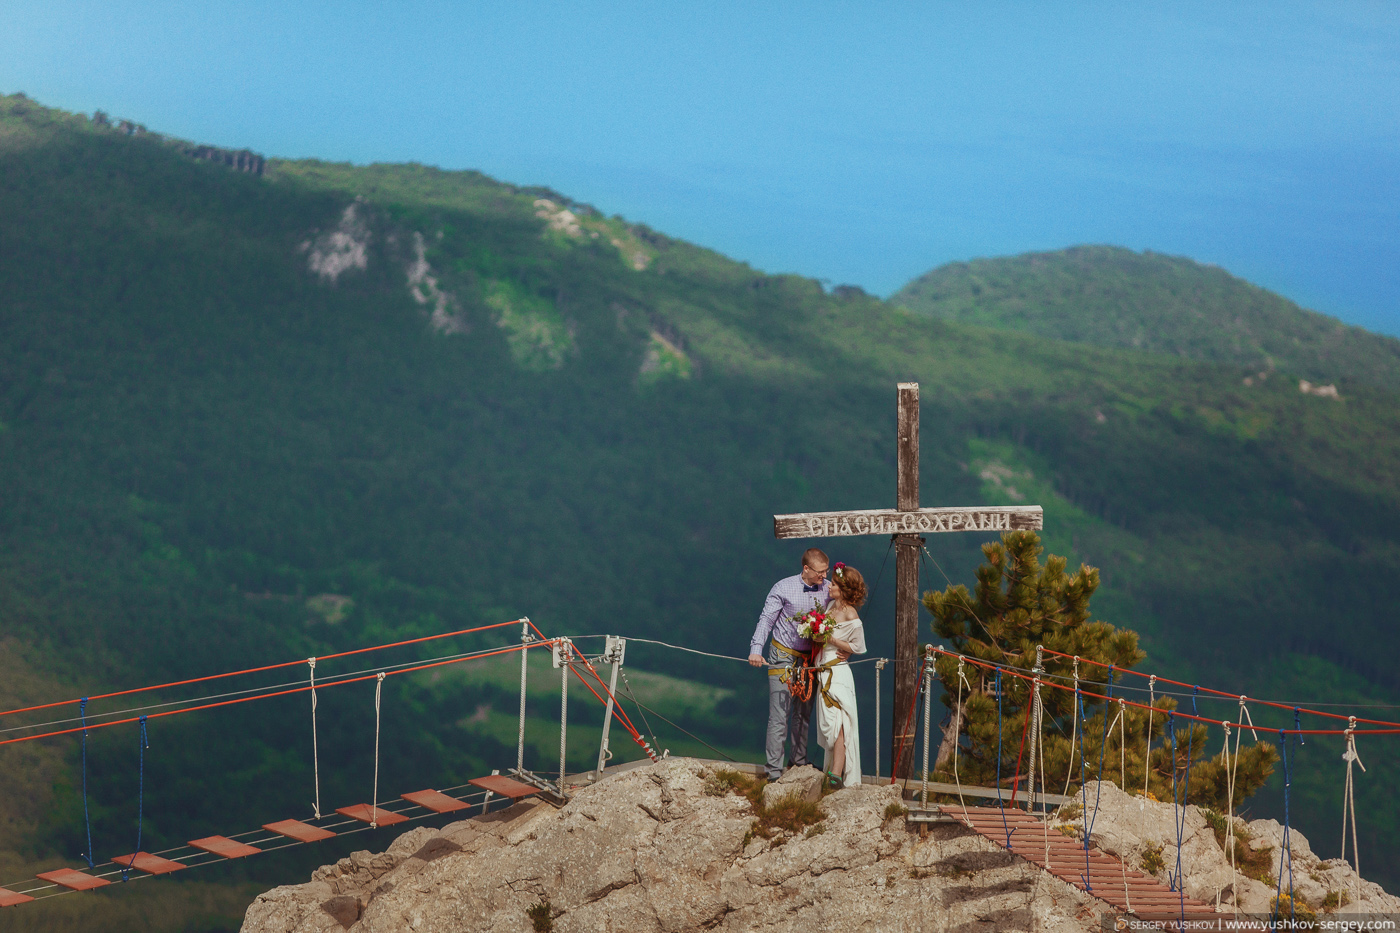 Свадьба для двоих в Крыму. Марина и Илья. Фотосессия на горе Ай-Петри.